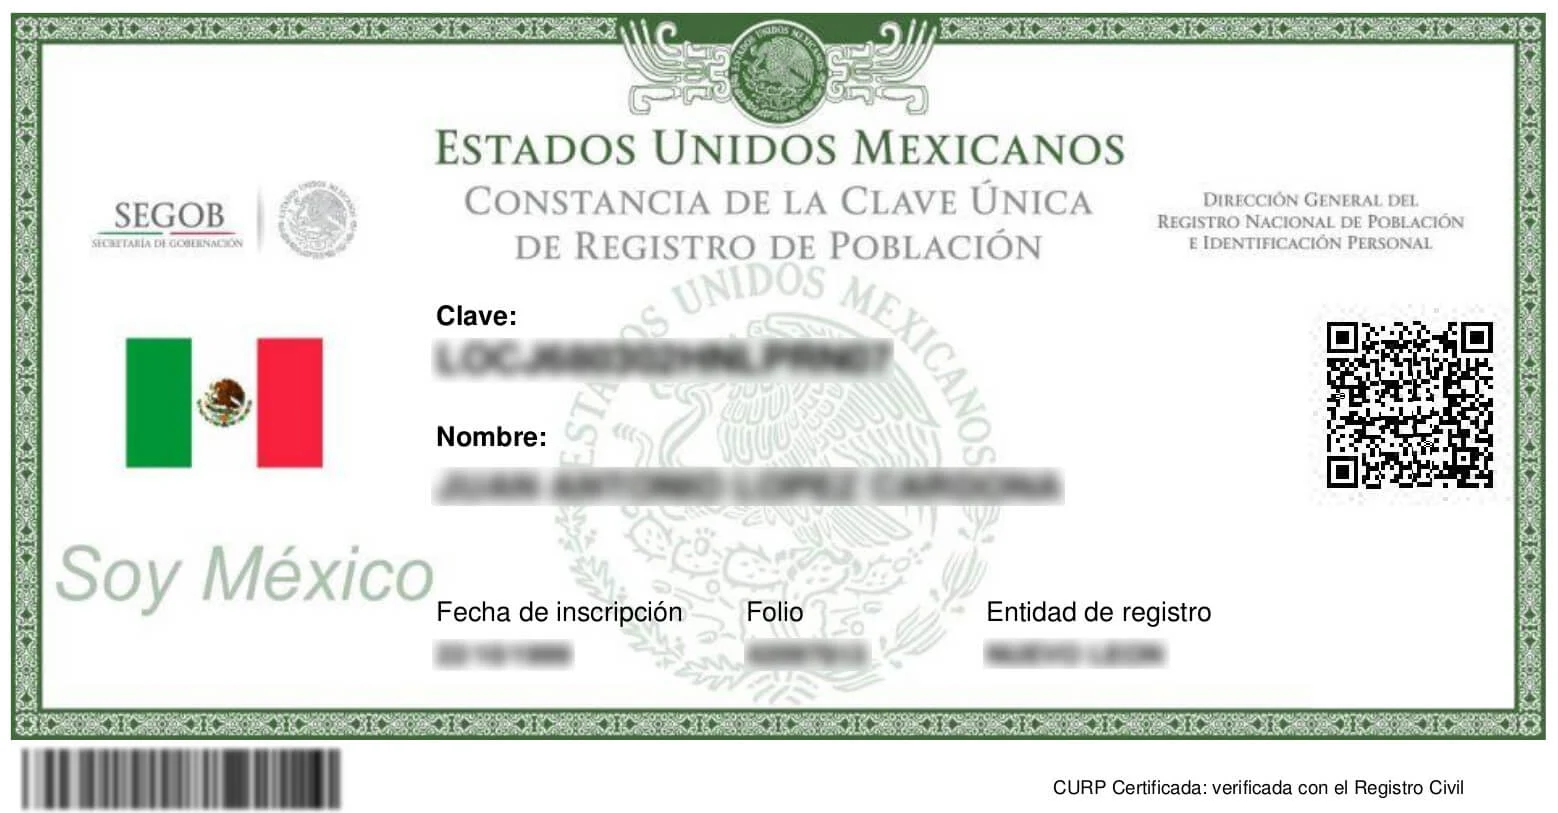 Curp Certificada por Registros Civiles